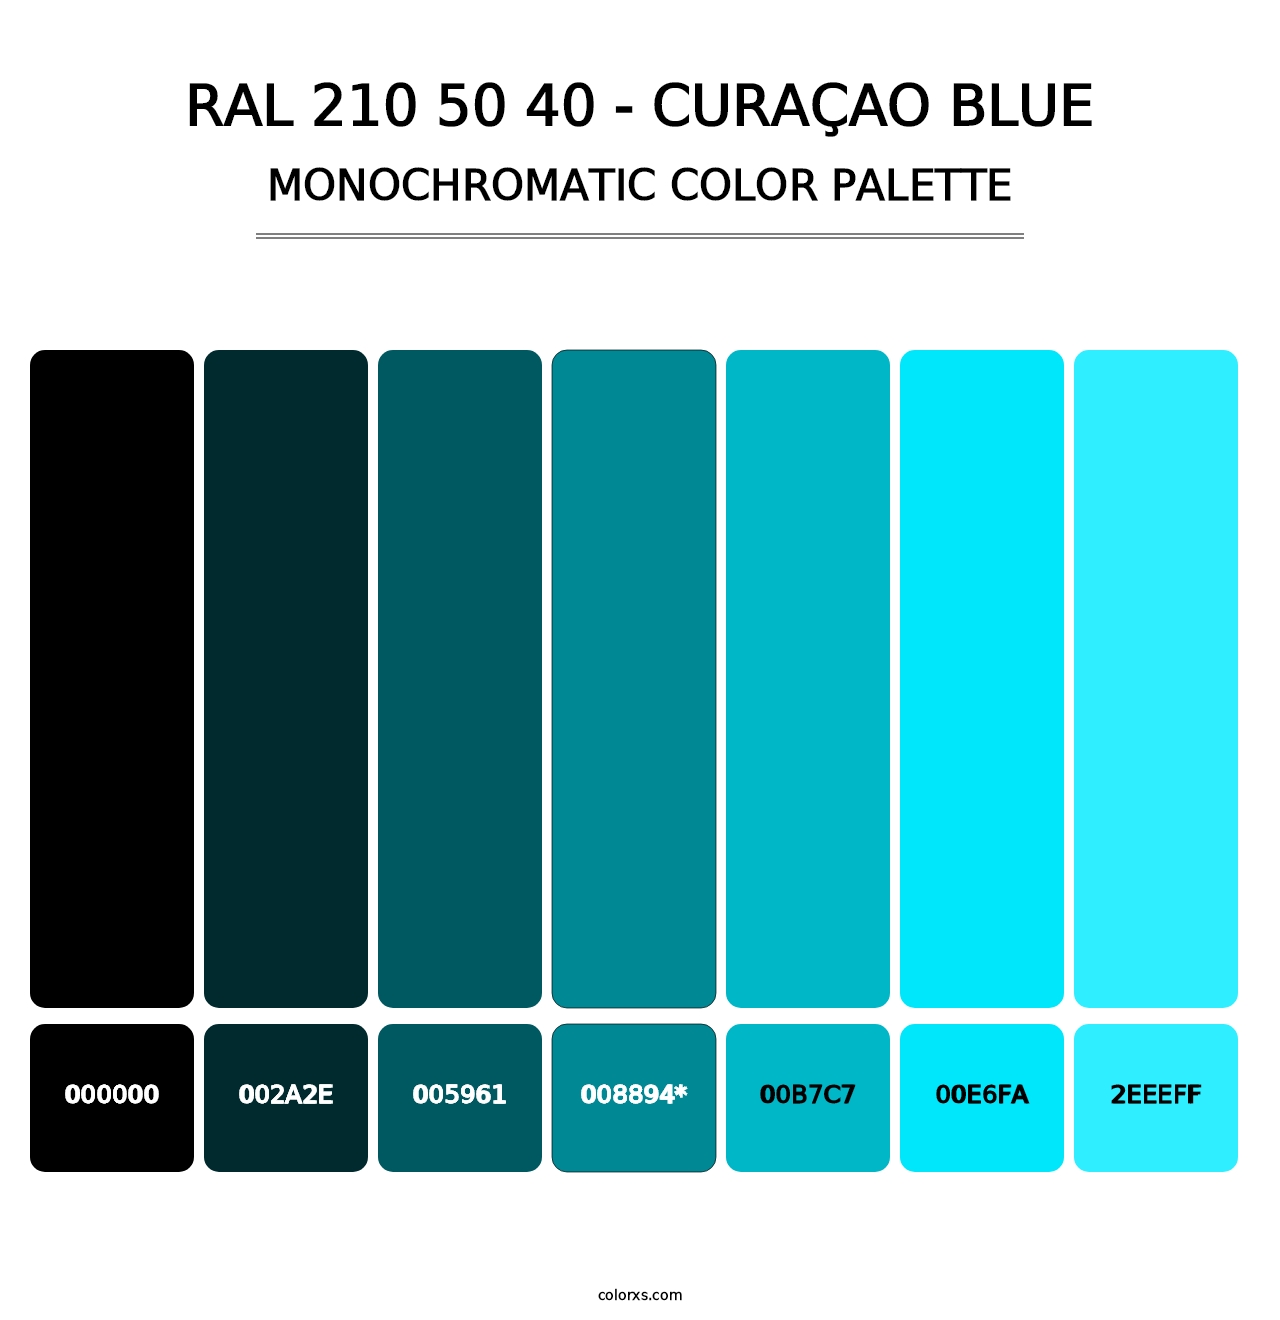 RAL 210 50 40 - Curaçao Blue - Monochromatic Color Palette